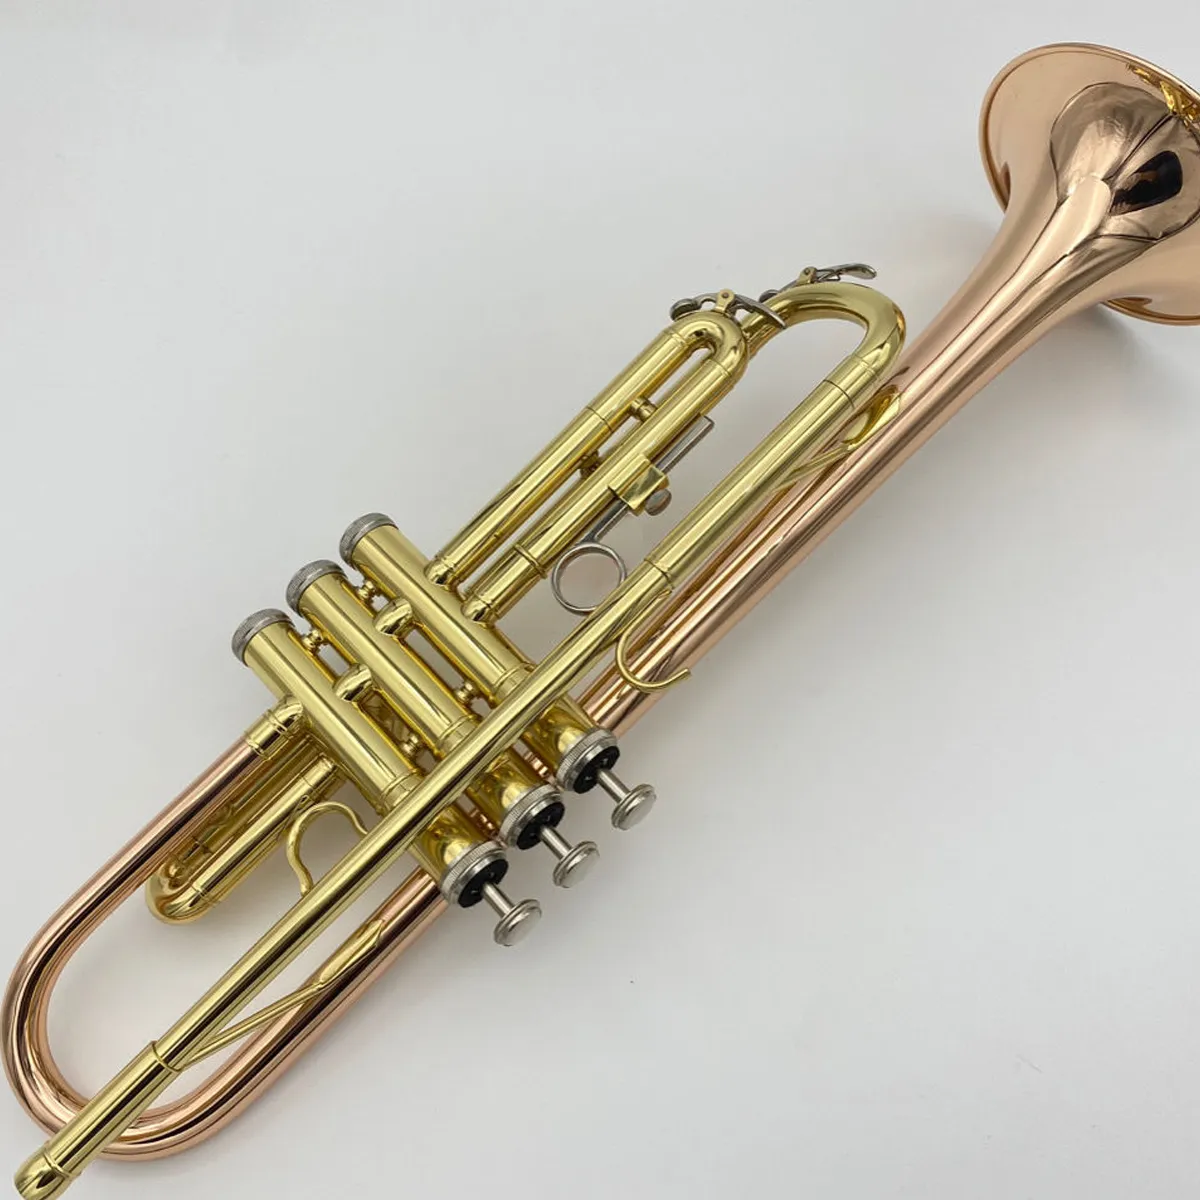 Hochwertiges professionelles Trompeteninstrument für Anfänger zum Spielen einer vergoldeten Phosphorbronze-Reverse-Grip-Trompete für die linke Hand